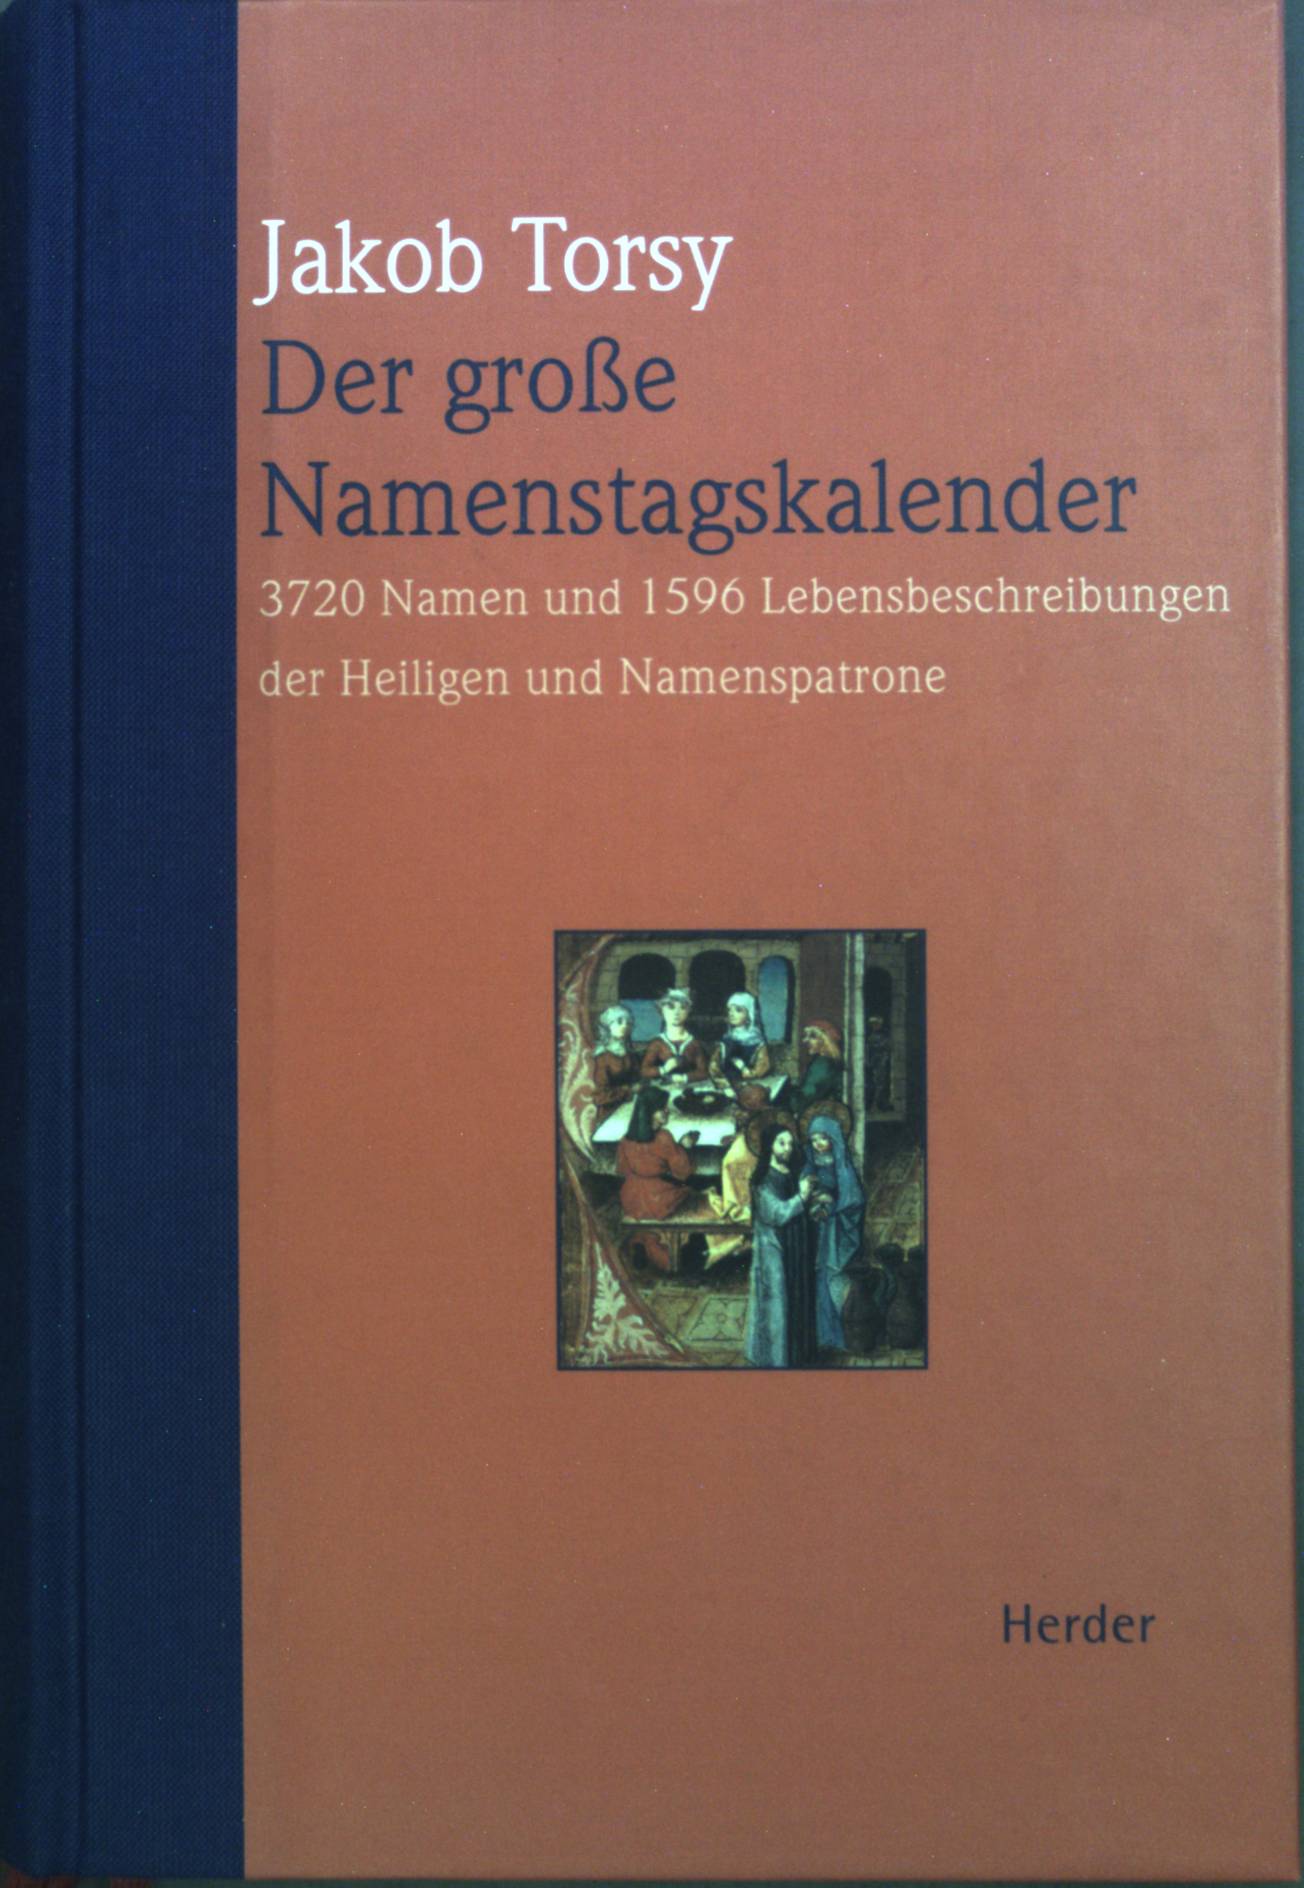 Der große Namenstagskalender : 3720 Namen und 1596 Lebensbeschreibungen der Heiligen und Namenspatrone. - Torsy, Jakob und Hans-Joachim Kracht